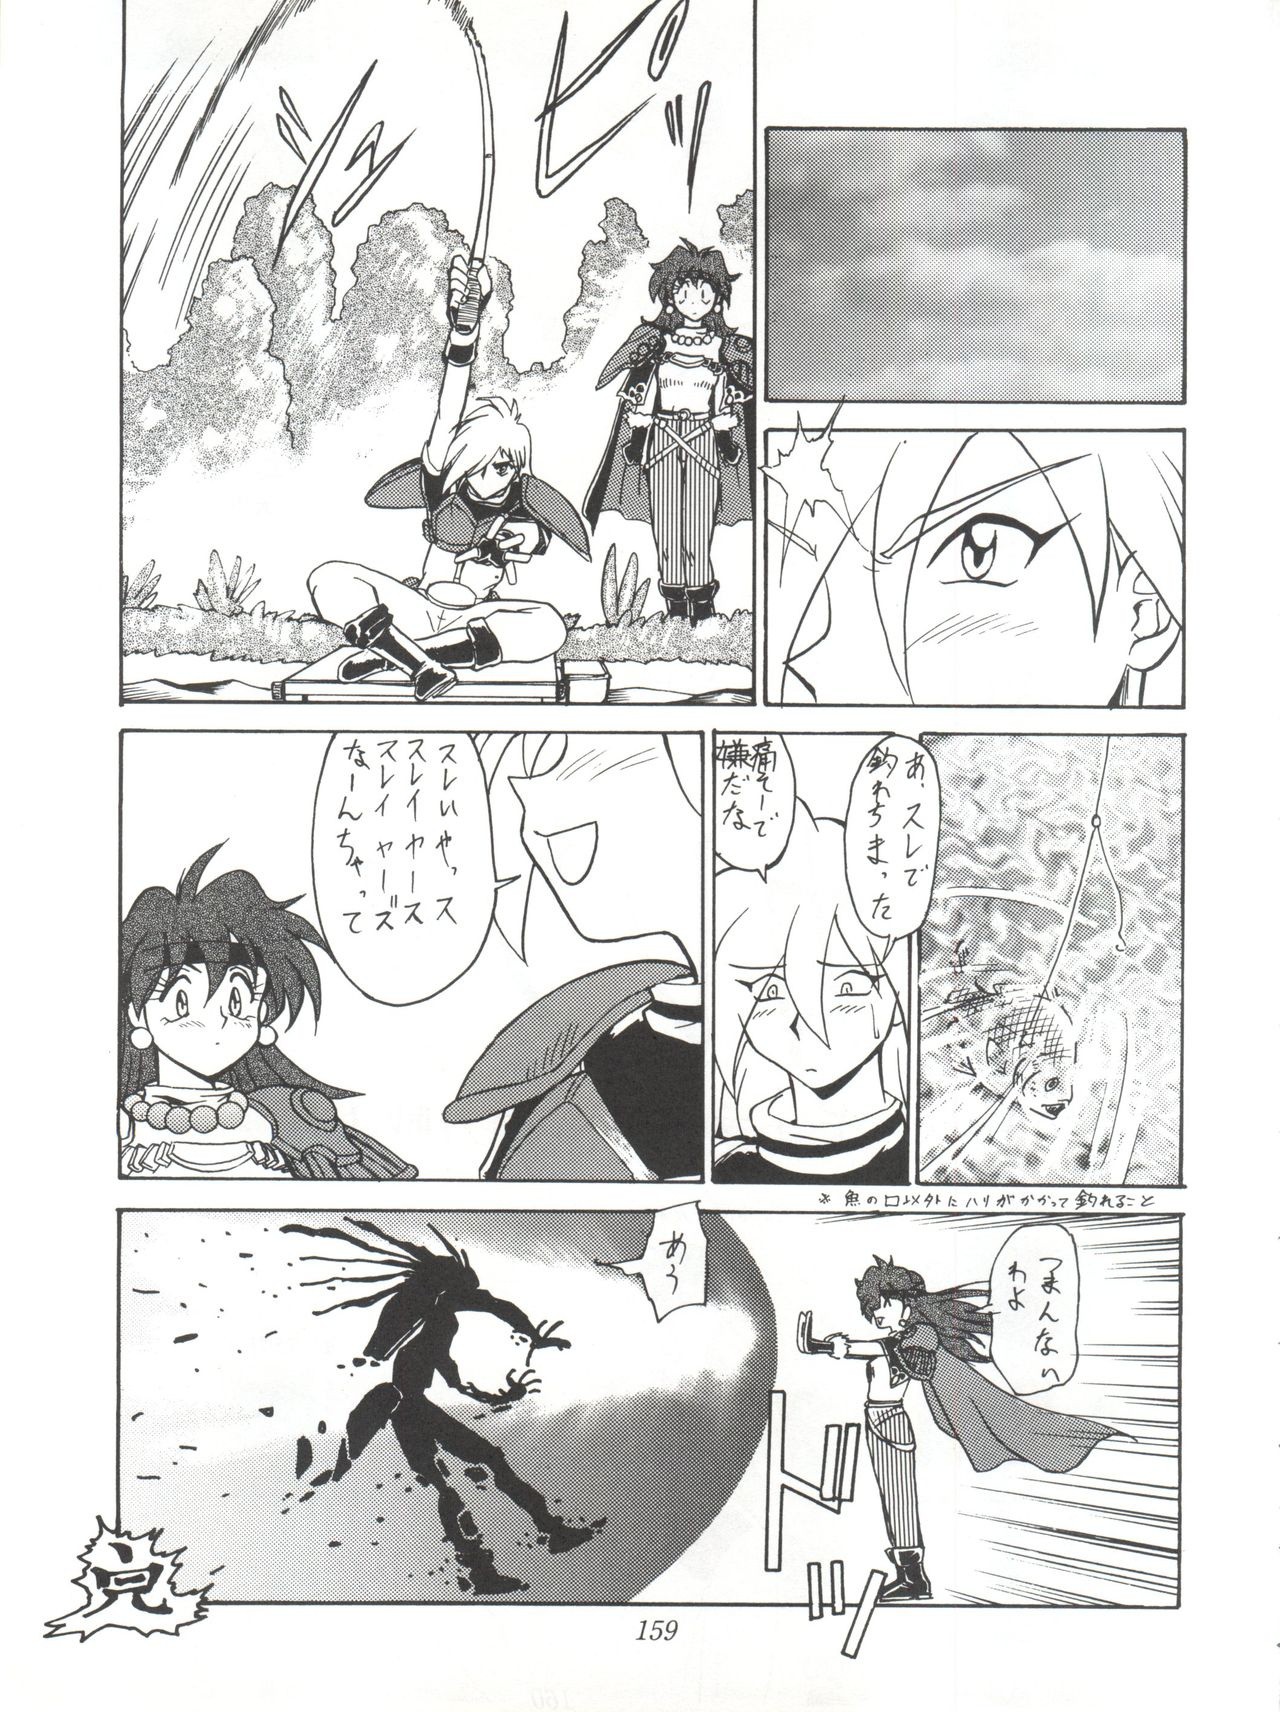 Yuuki and Yume and Mukubo's Japanese hentai manga picture 112